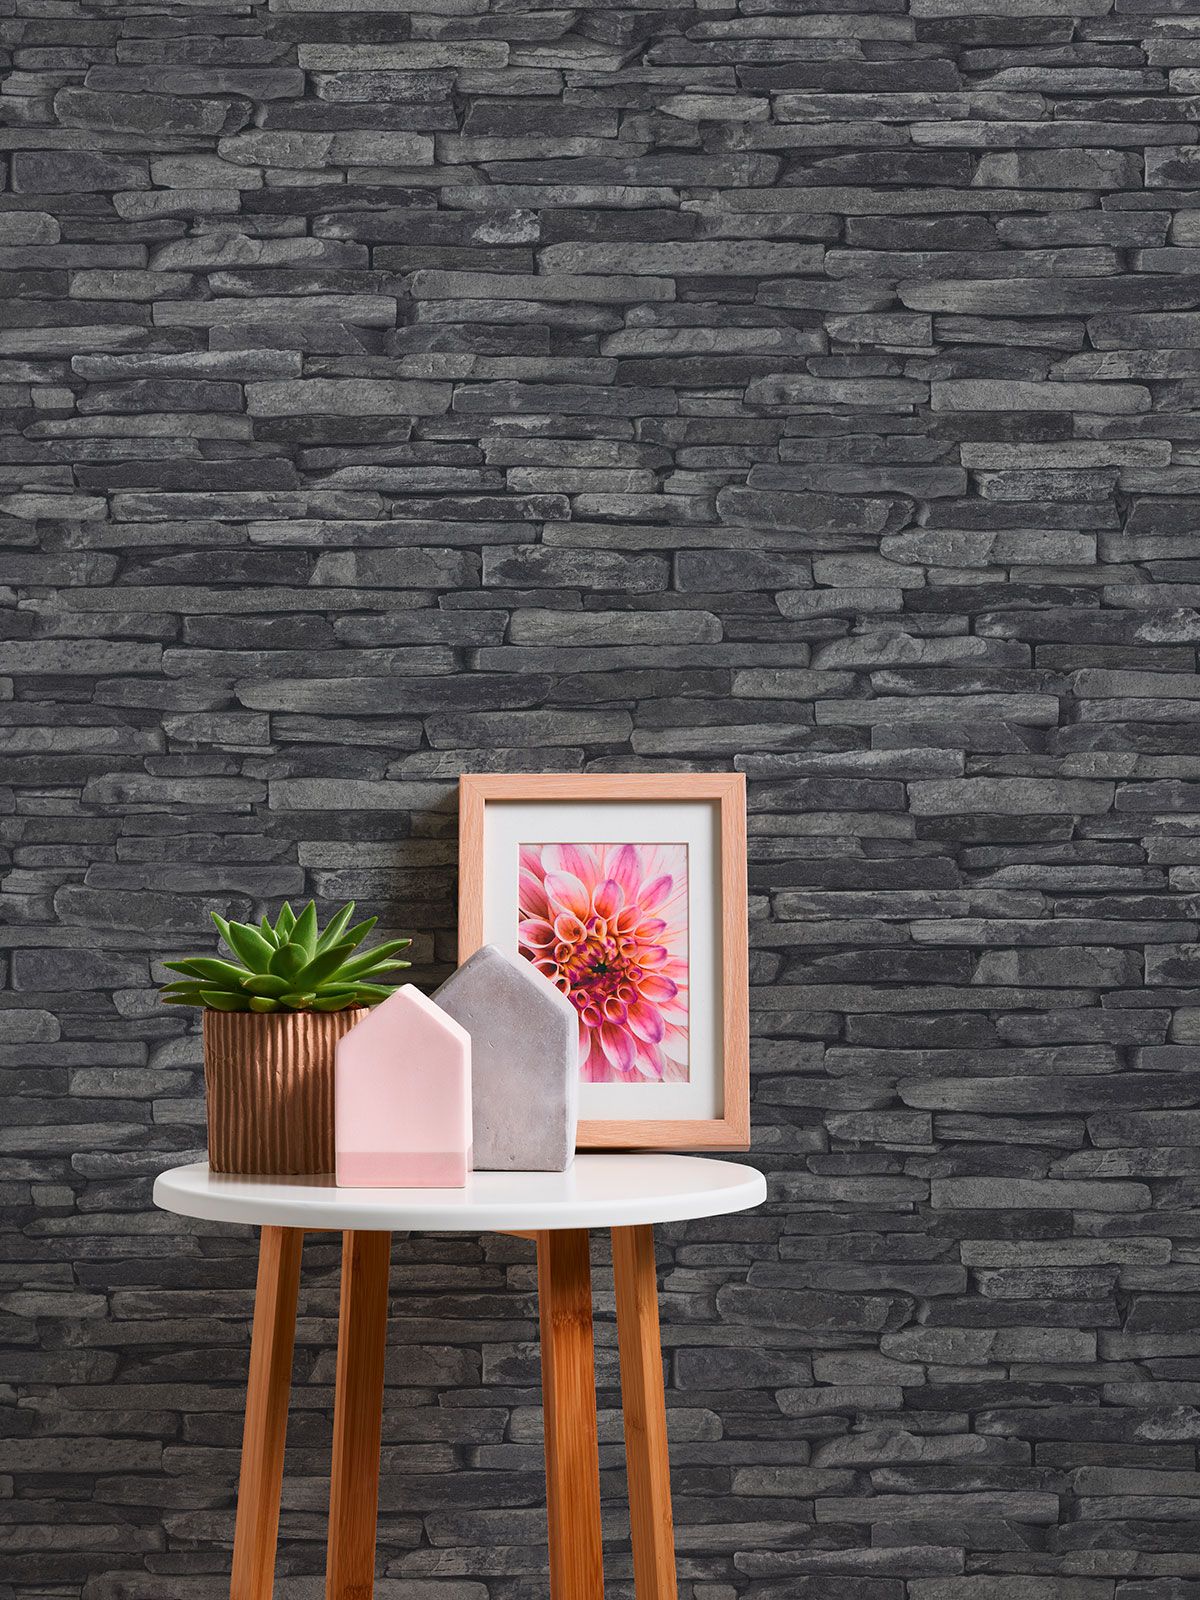 Stone-effect wallpaper living room black